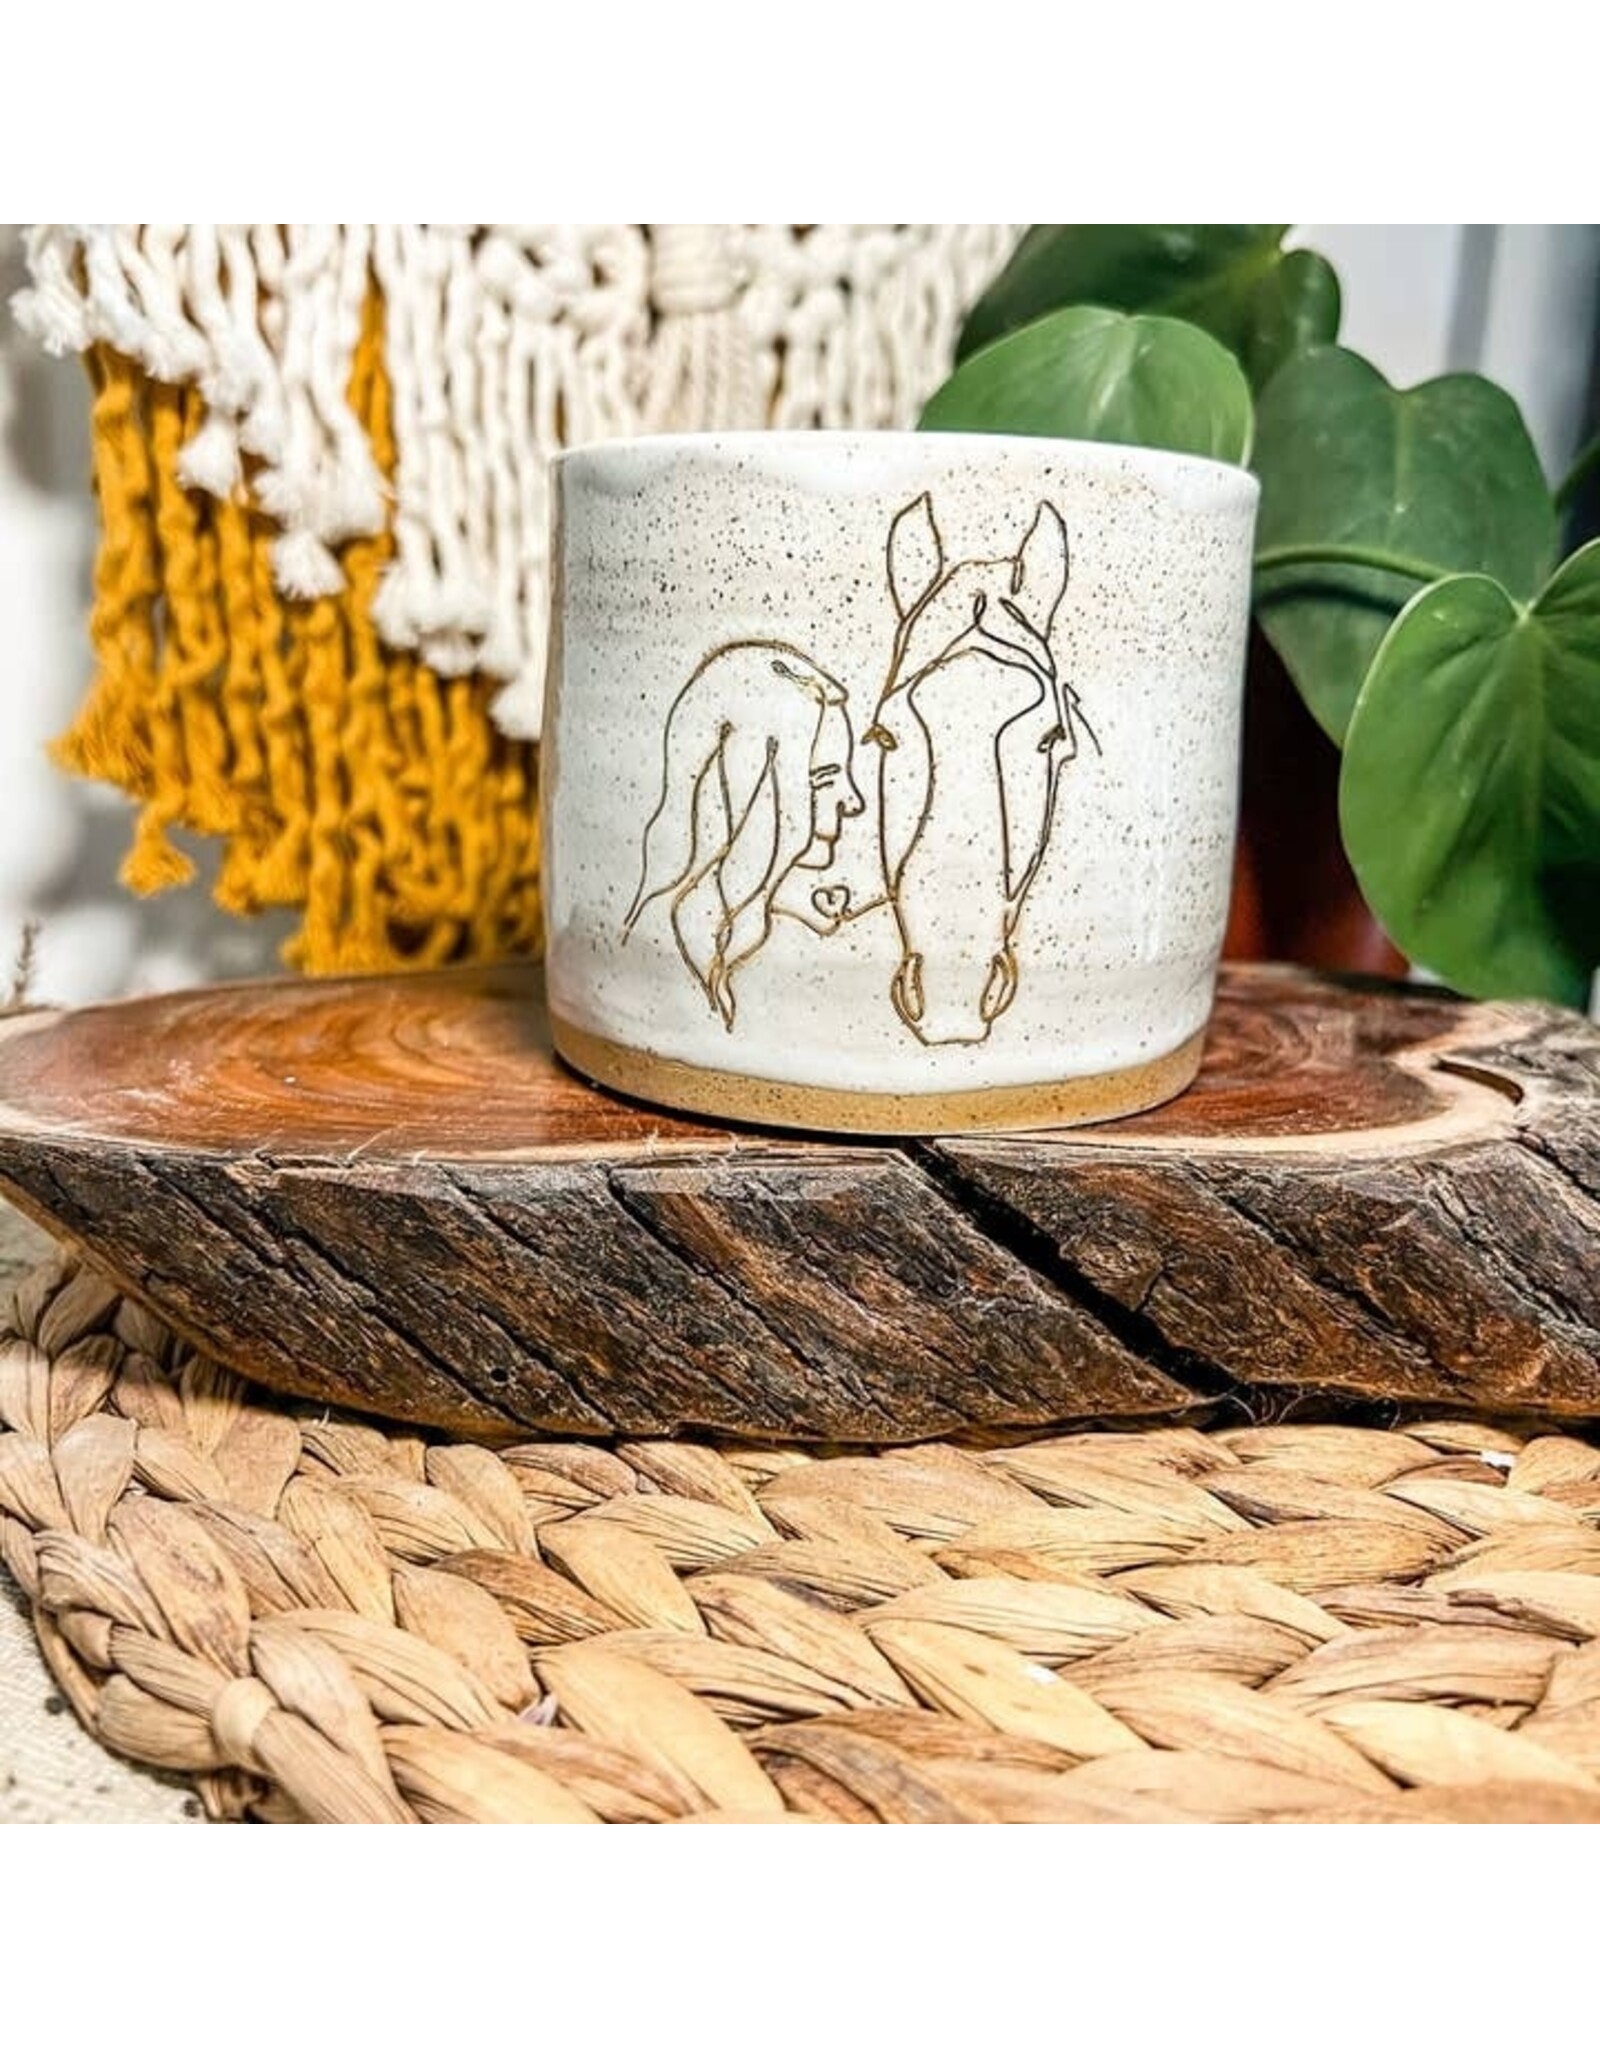 Wolf & Clay Ceramic Mugs